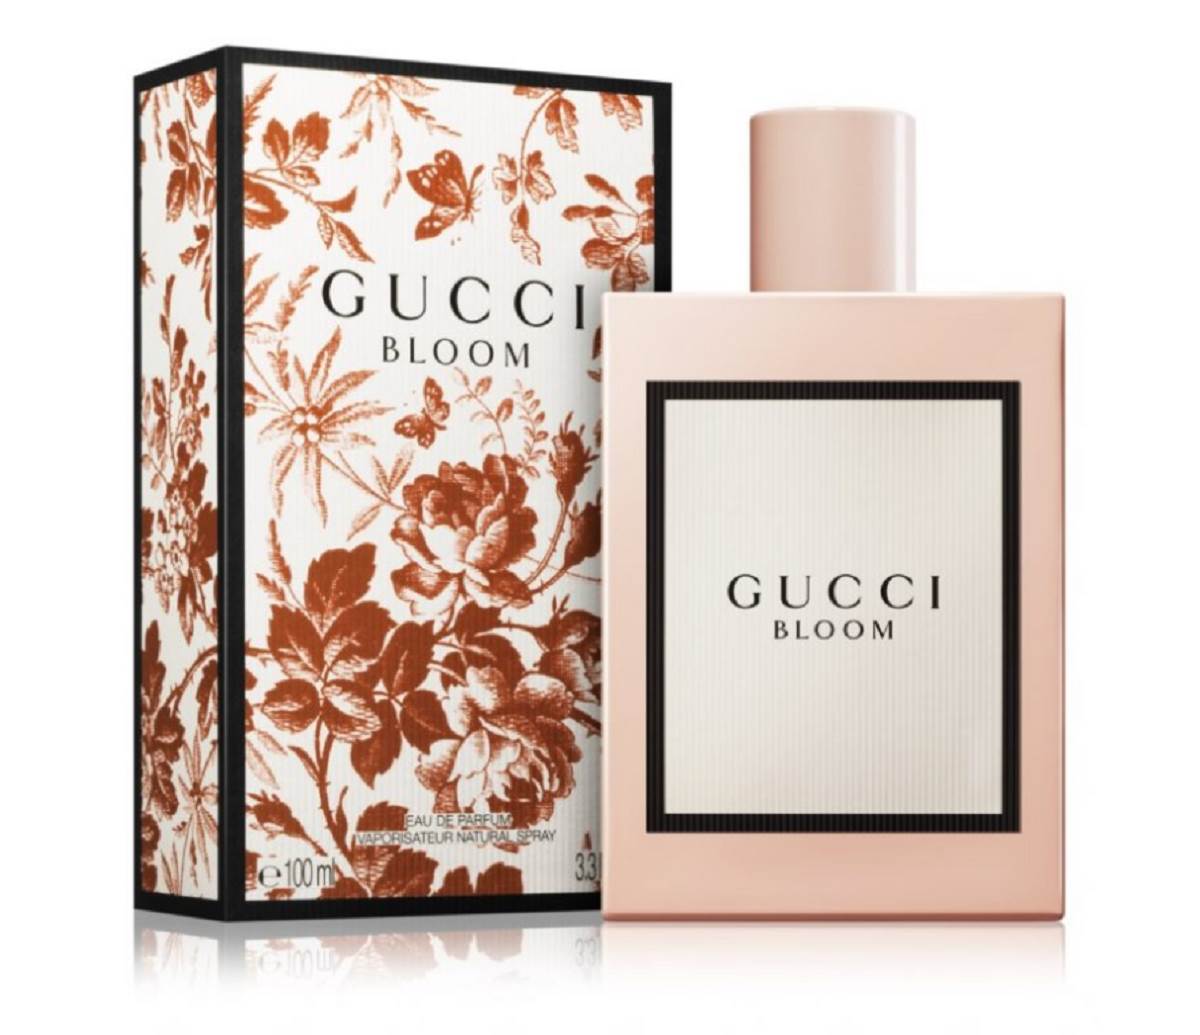  Najbolji cvetni miris: Gucci, Gucci Bloom. 